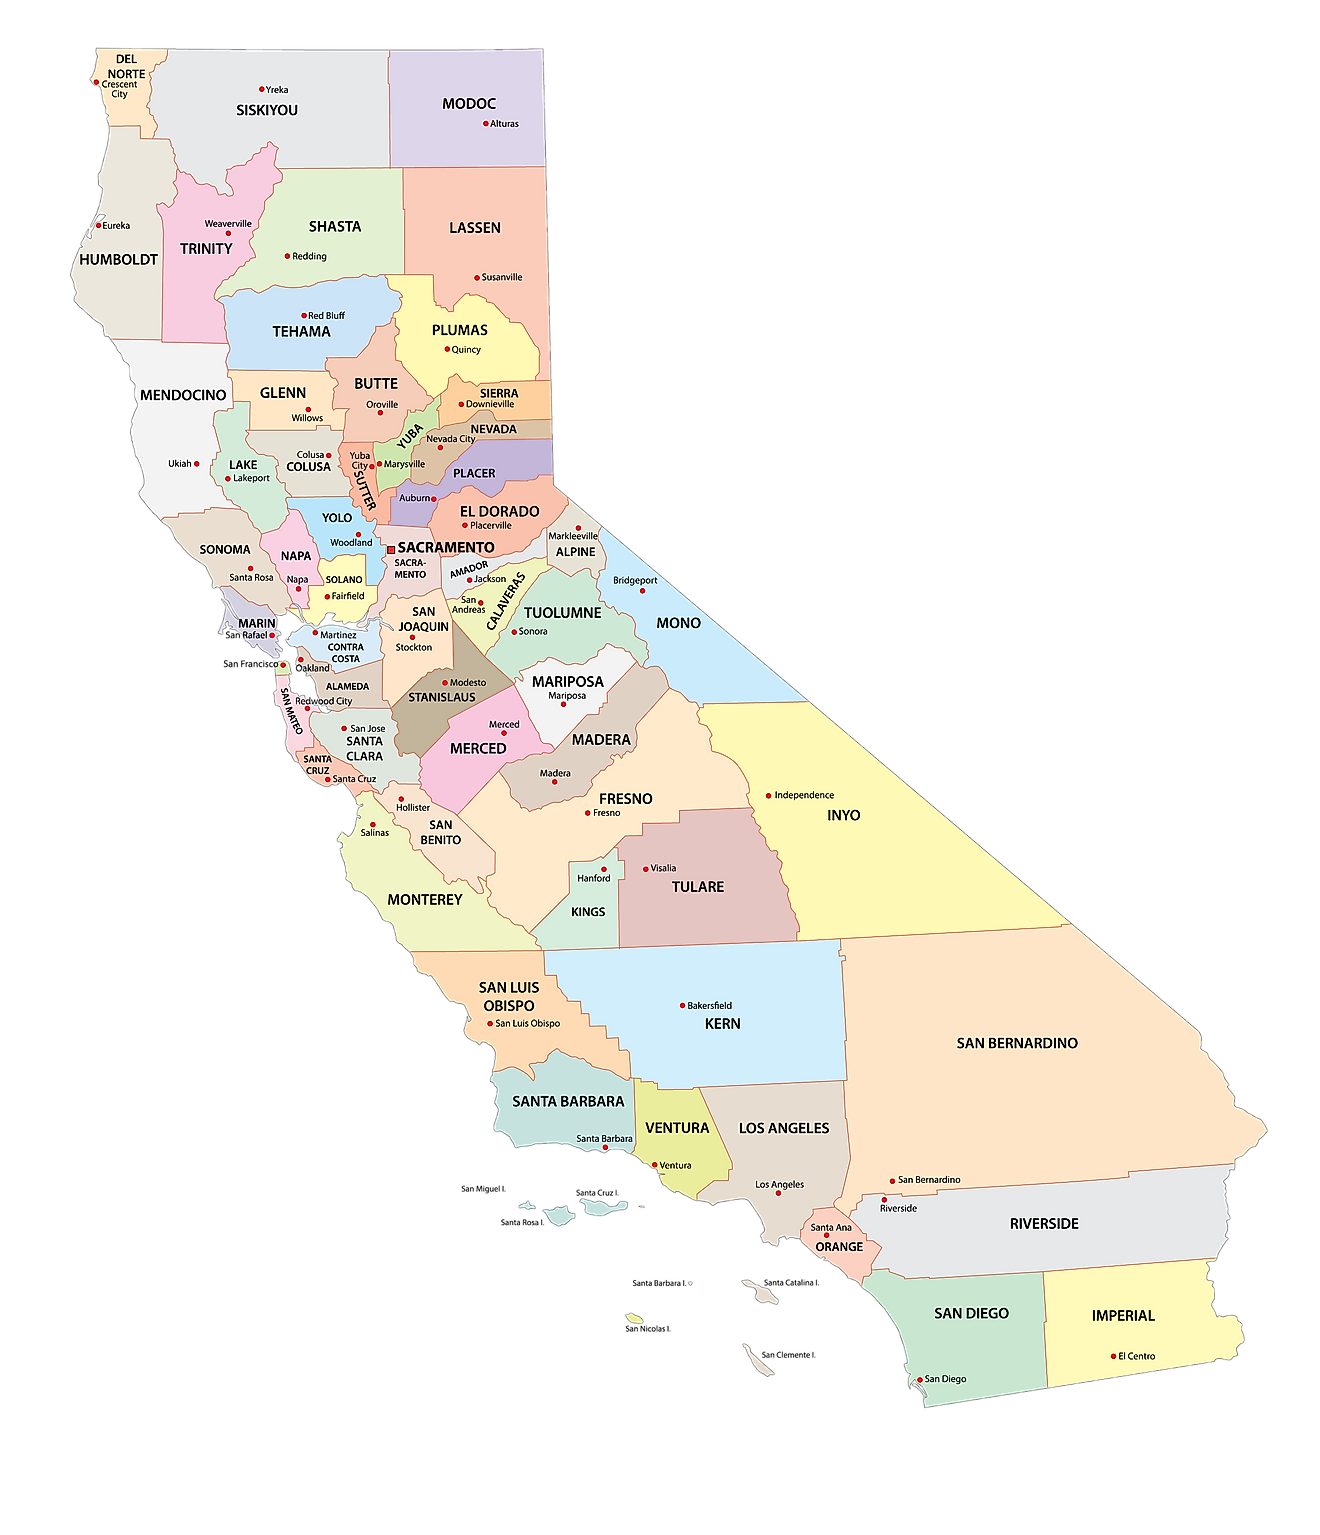 Mapa administrativo de California que muestra sus 58 condados y la ciudad capital - Sacramento